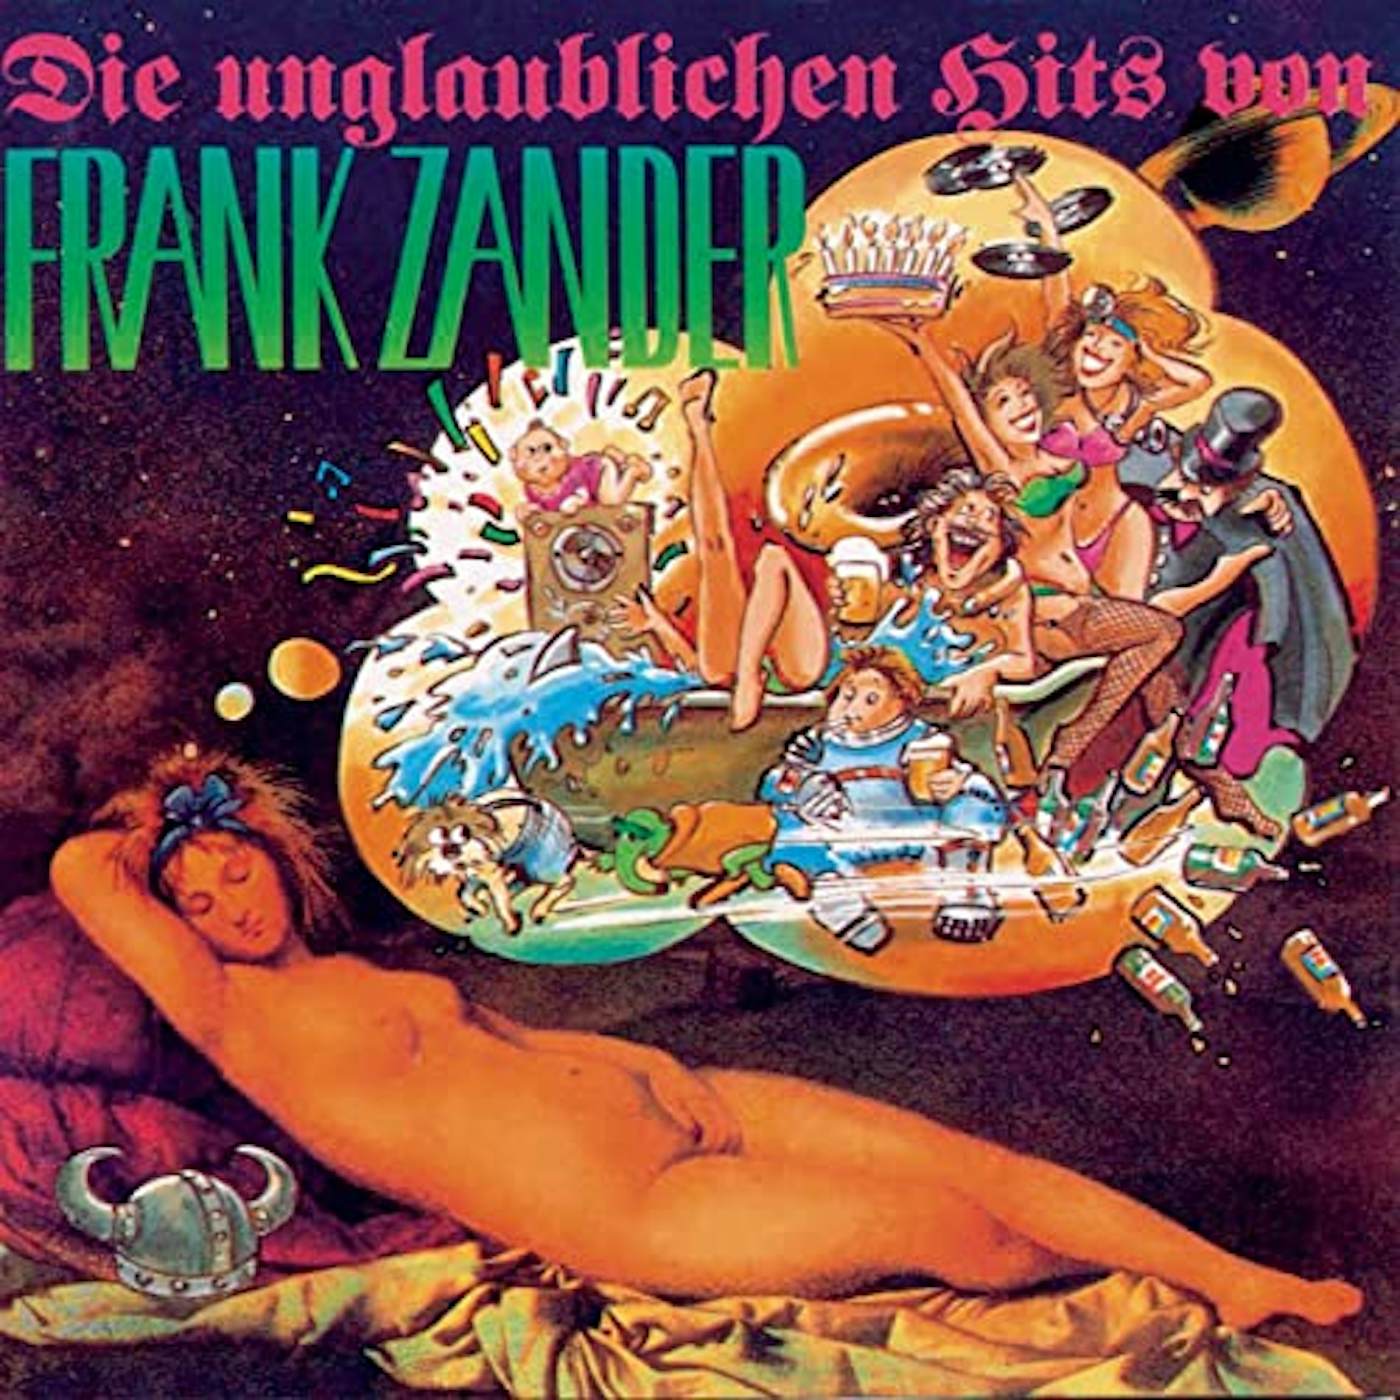 DIE UNGLAUBLICHEN HITS VON FRANK ZANDER CD